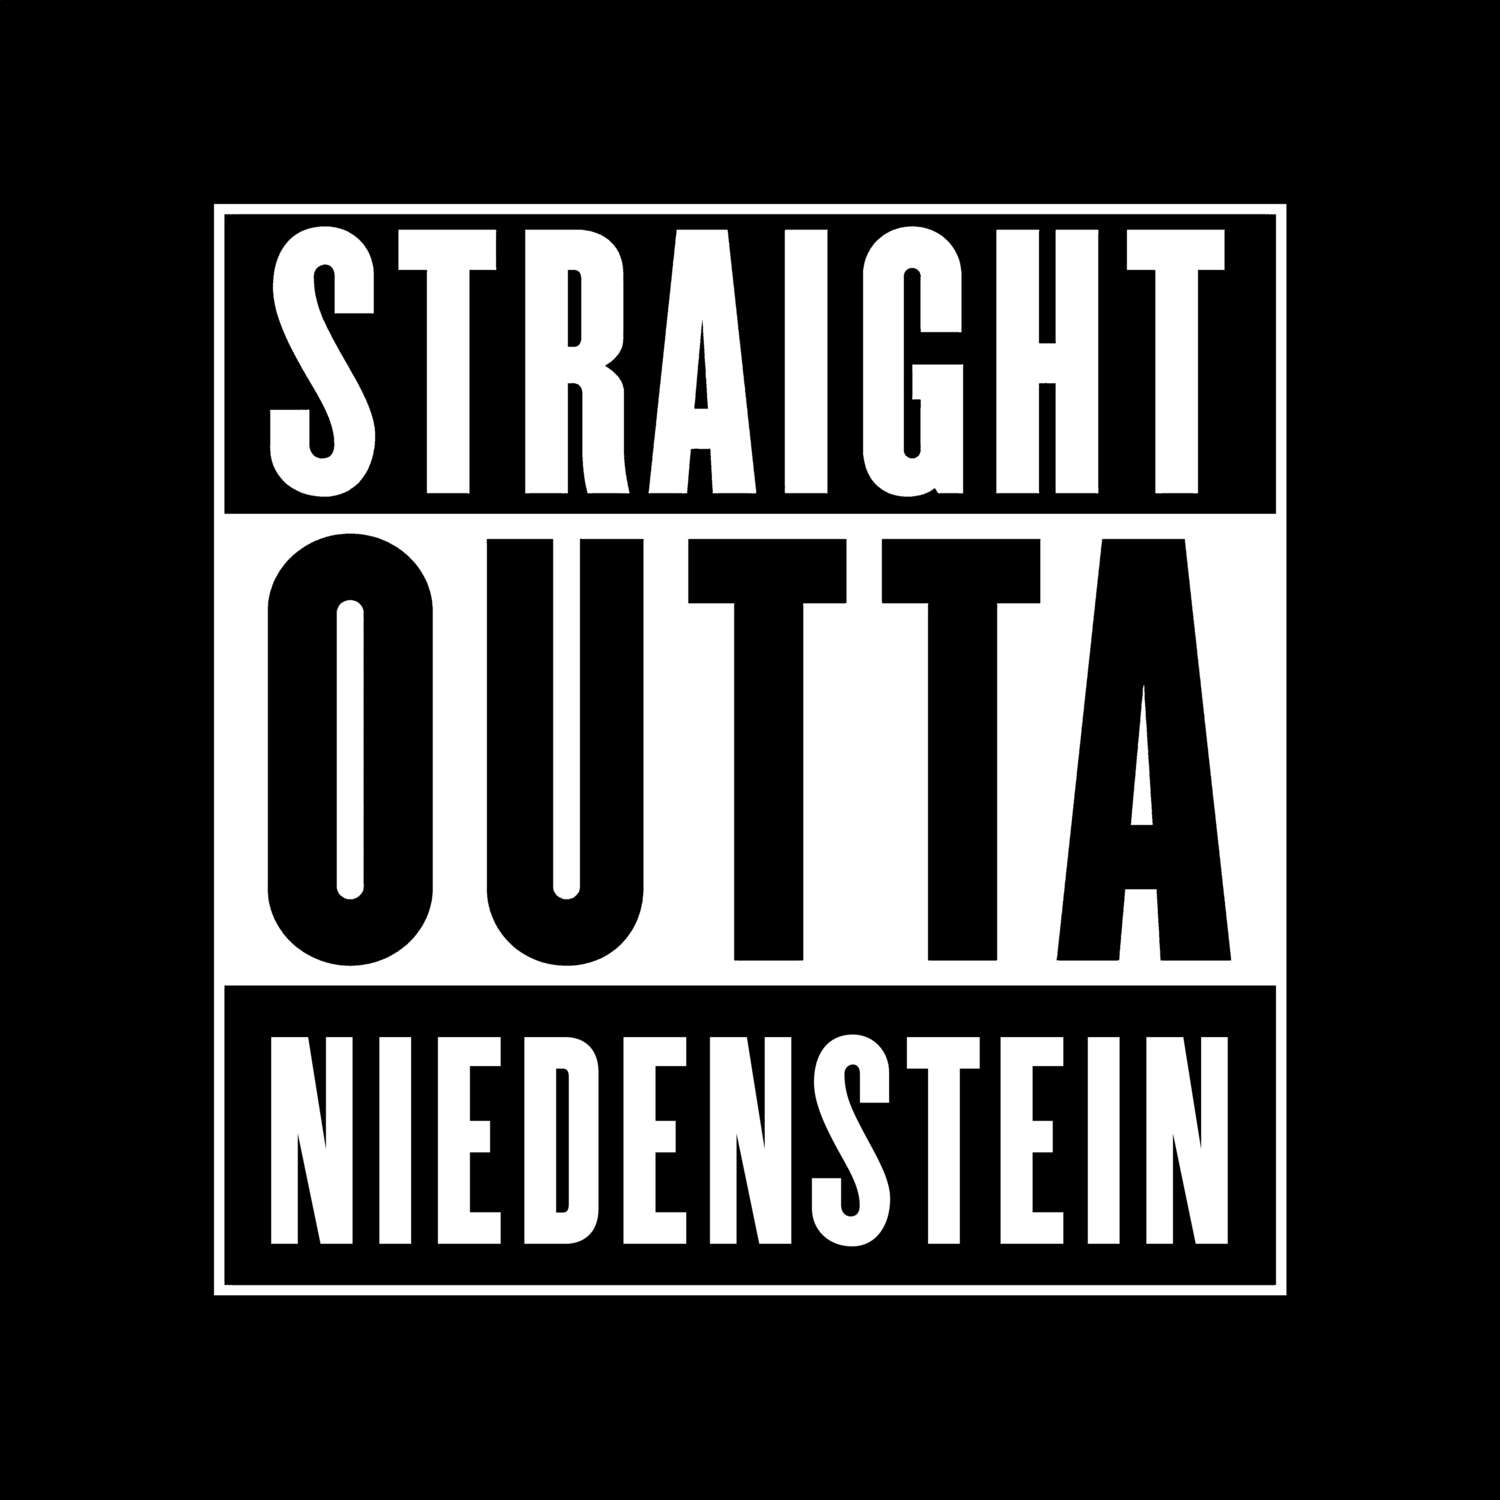 Niedenstein T-Shirt »Straight Outta«